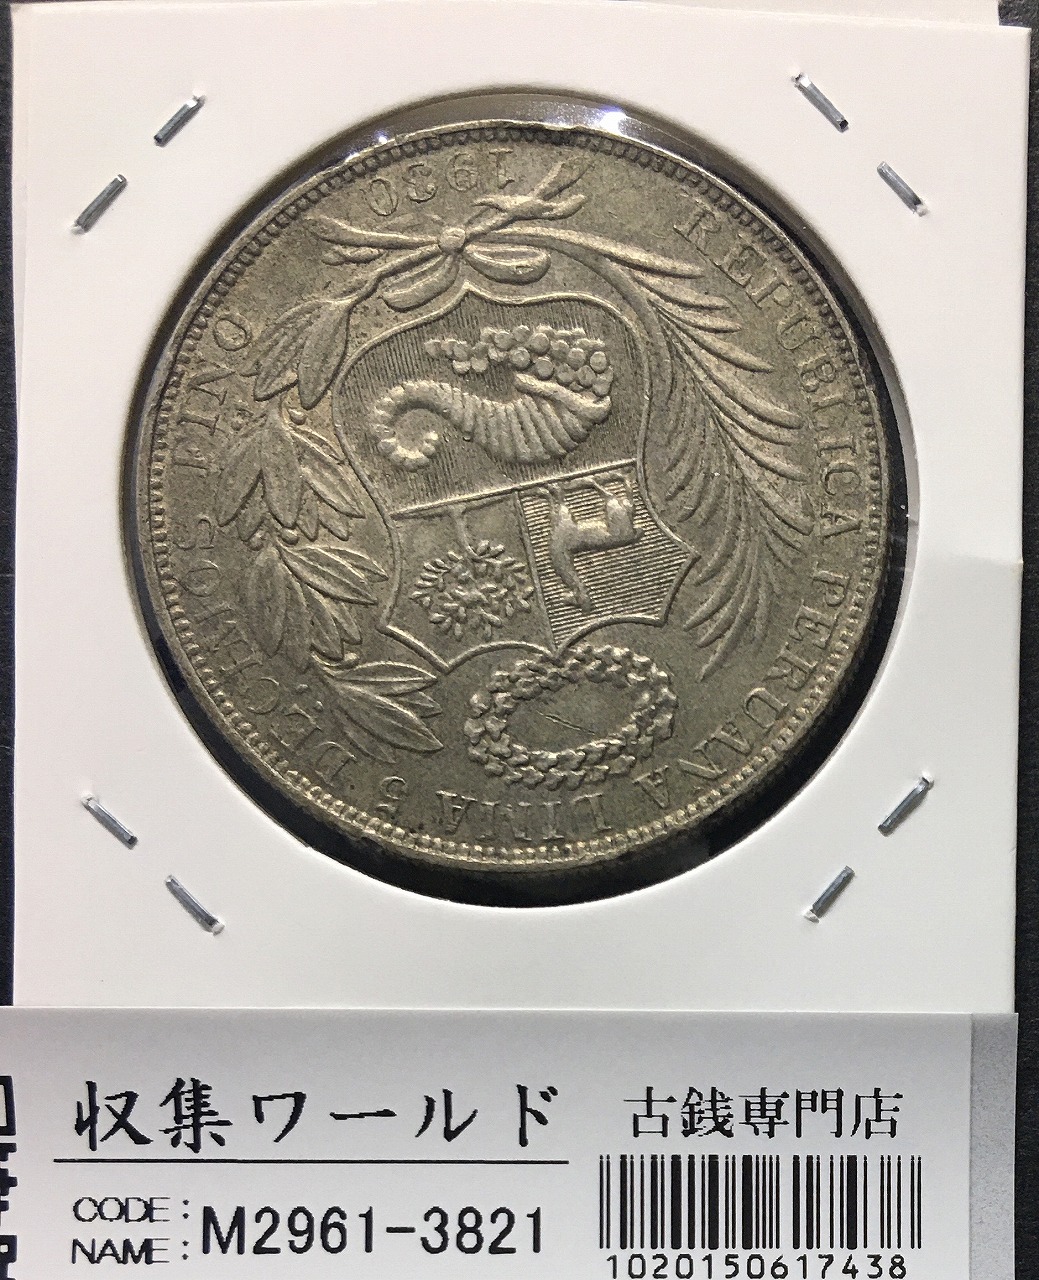 ペルー共和国 1ソル銀貨/女神座像 1930年銘 大型近代銀貨 極美品 | 収集ワールド